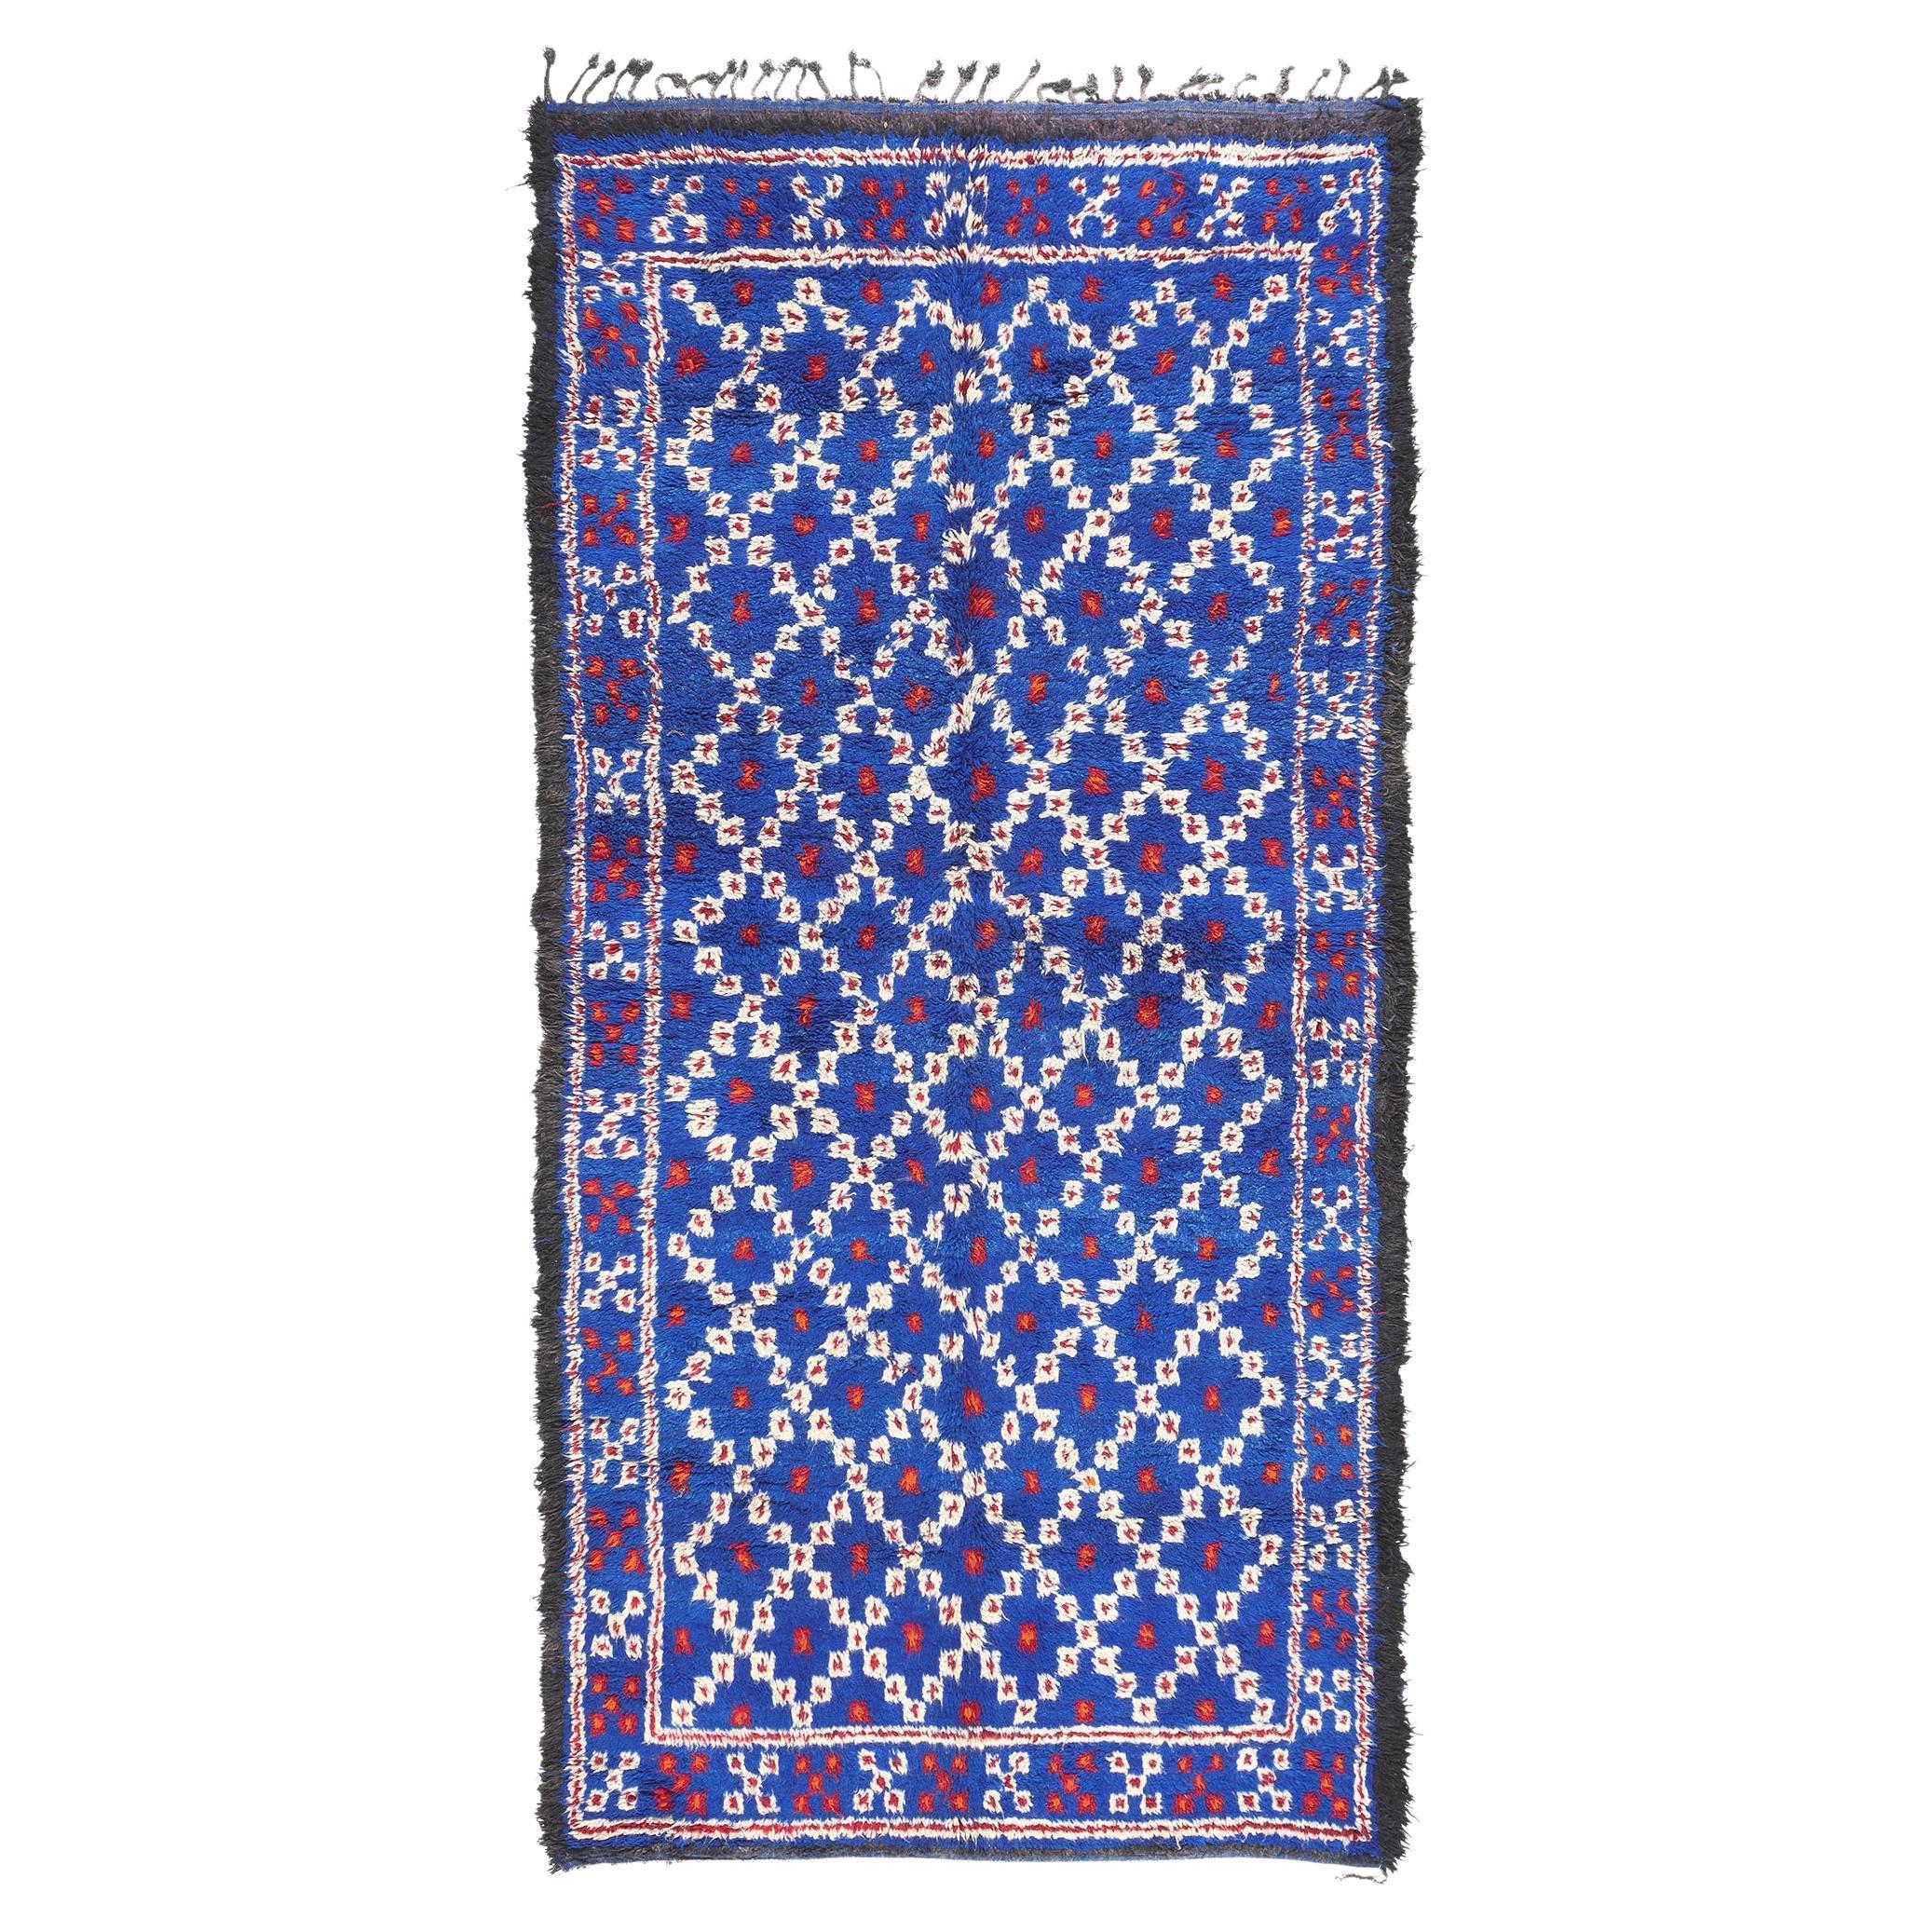 Marokkanischer blauer Beni MGuild-Teppich in Blau